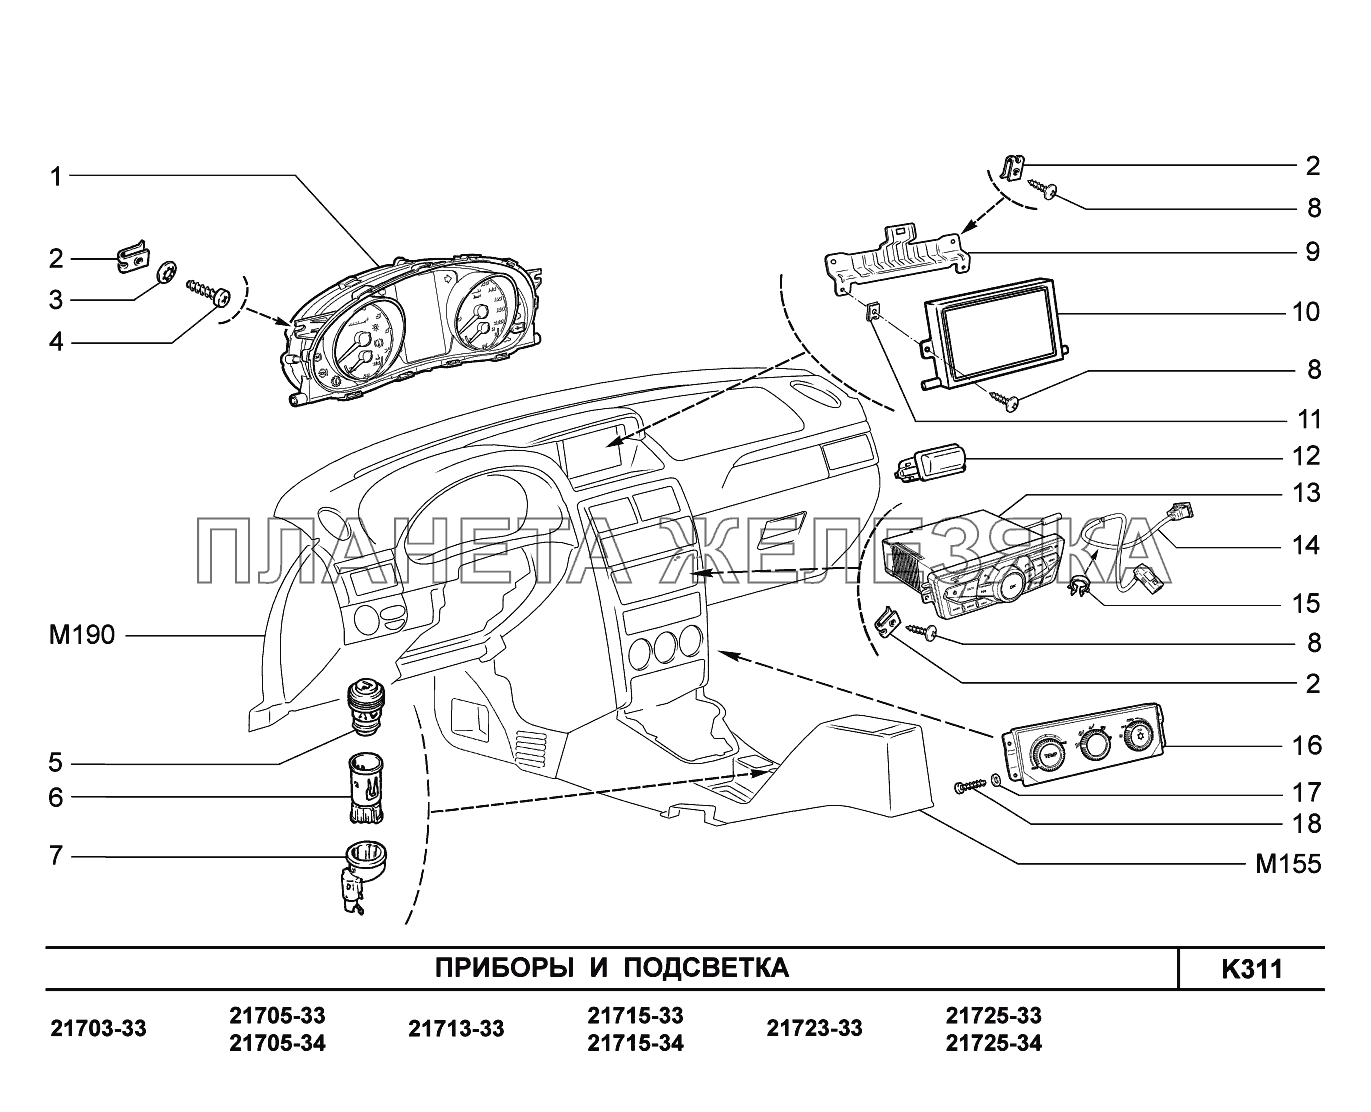 K311. Приборы и подсветка ВАЗ-2170 